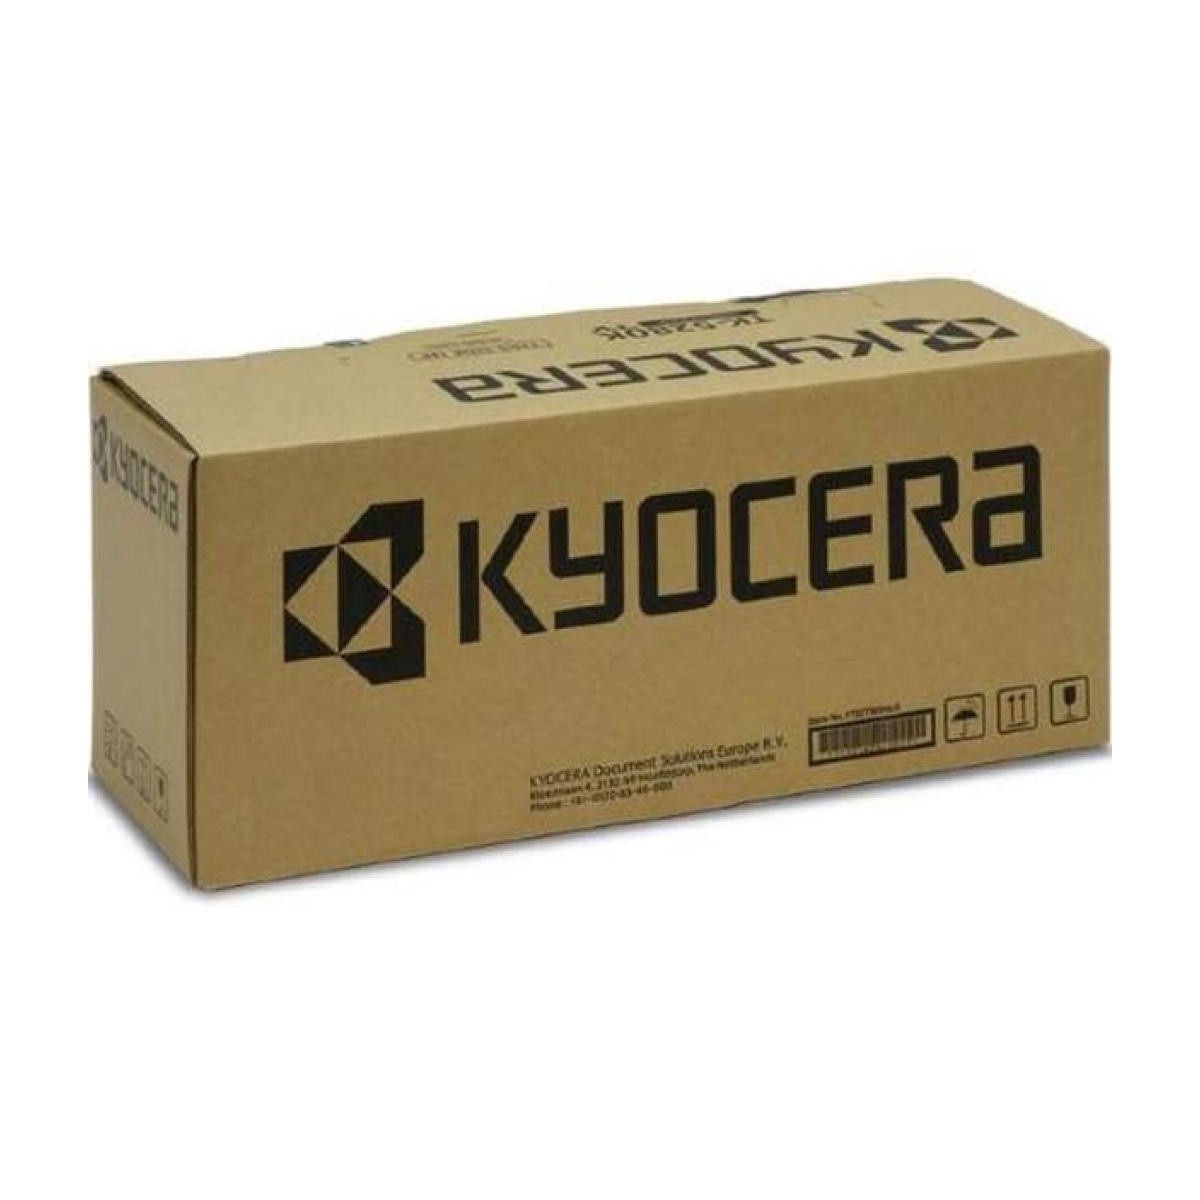 Kyocera MK-8115B - Maintenance kit - Laser - 200000 pages - Kyocera - ECOSYS M8124cidn - M8130cidn